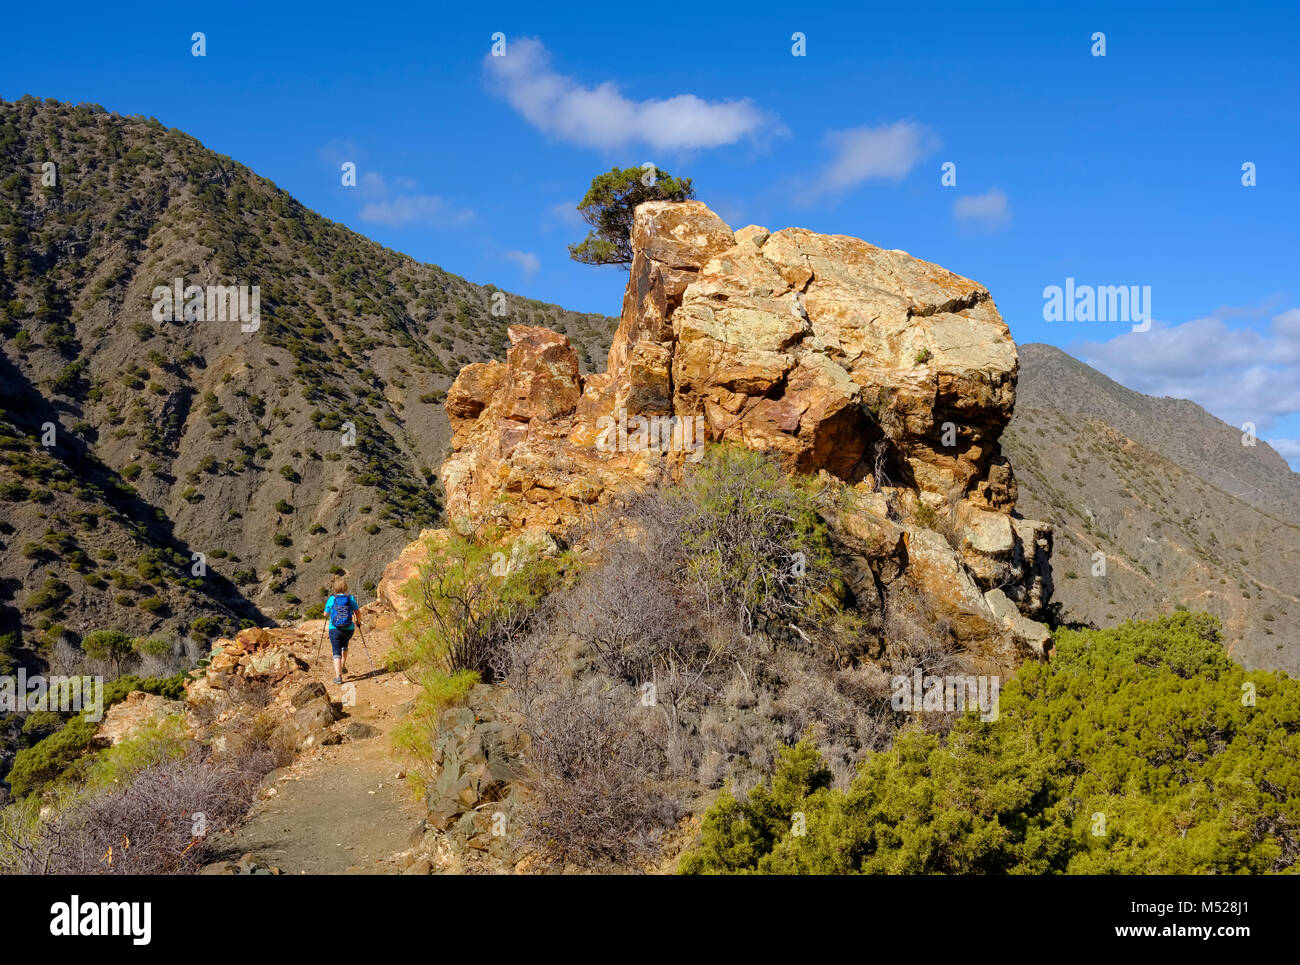 Felsformation, Frau Wandern auf der Spur, in der Nähe von Vallehermoso Tamargada, La Gomera, Kanarische Inseln, Spanien Stockfoto